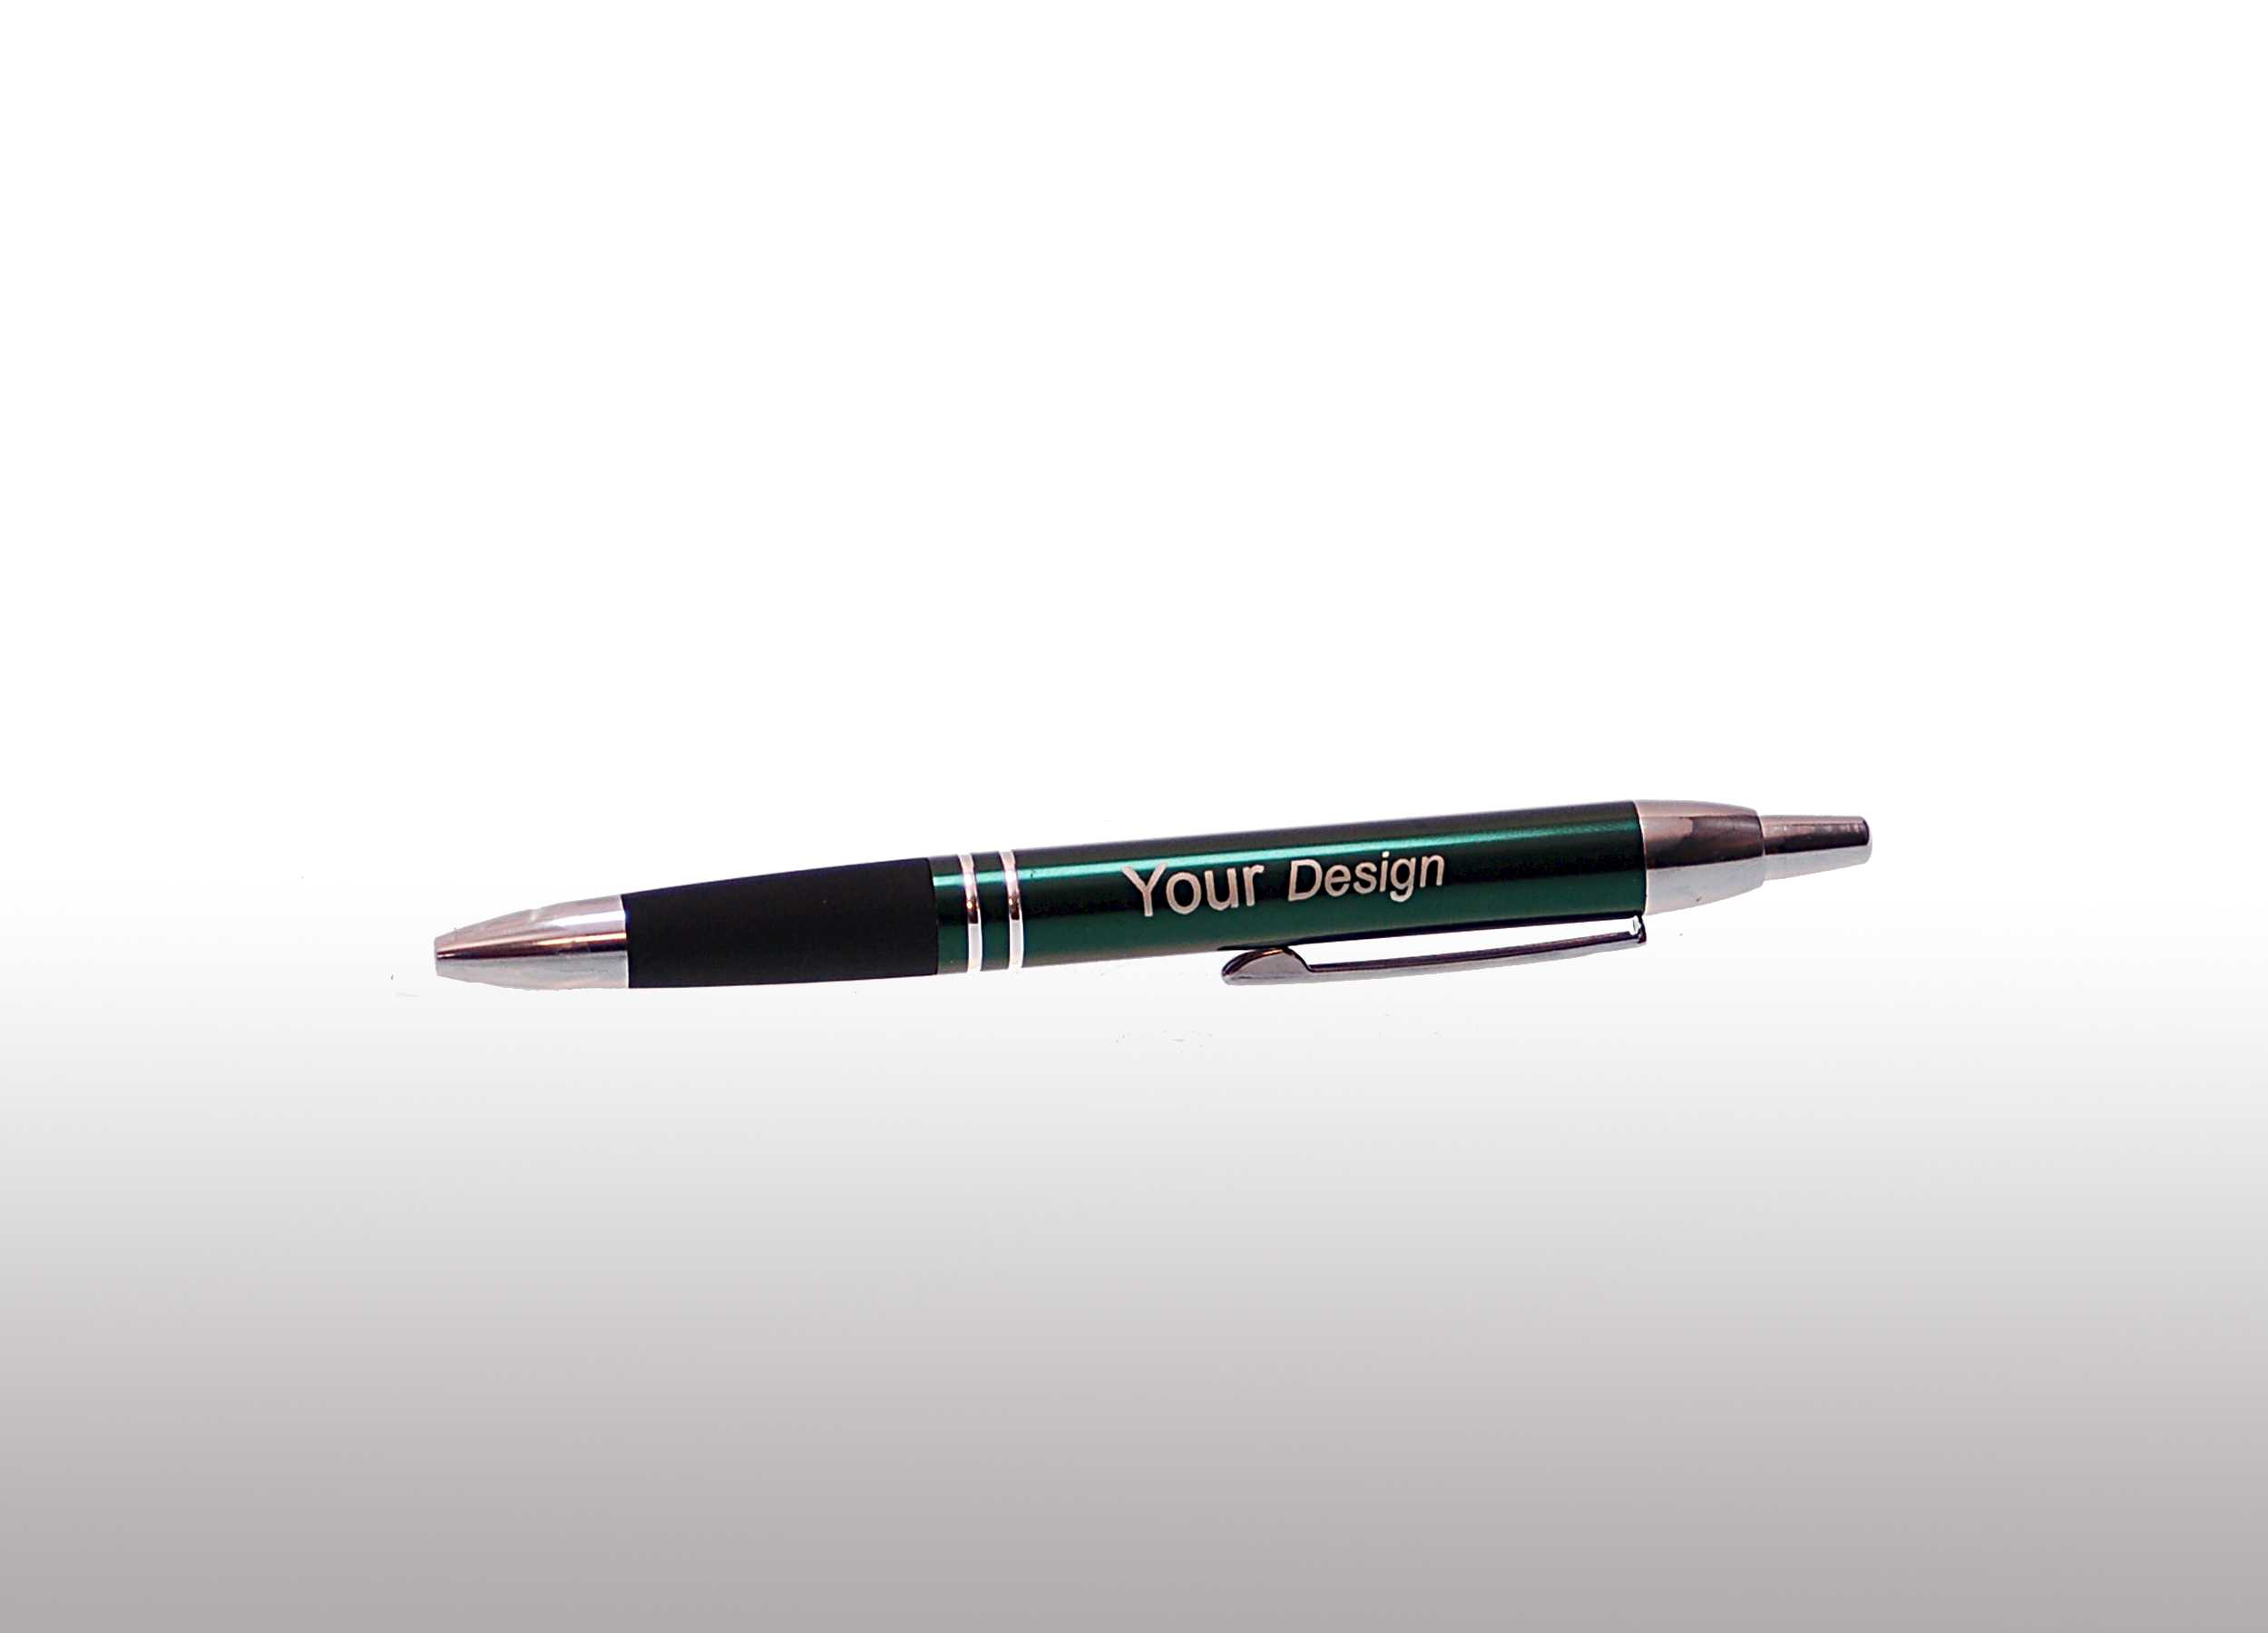 Groen metalen pen met uw eigen design gegraveerd